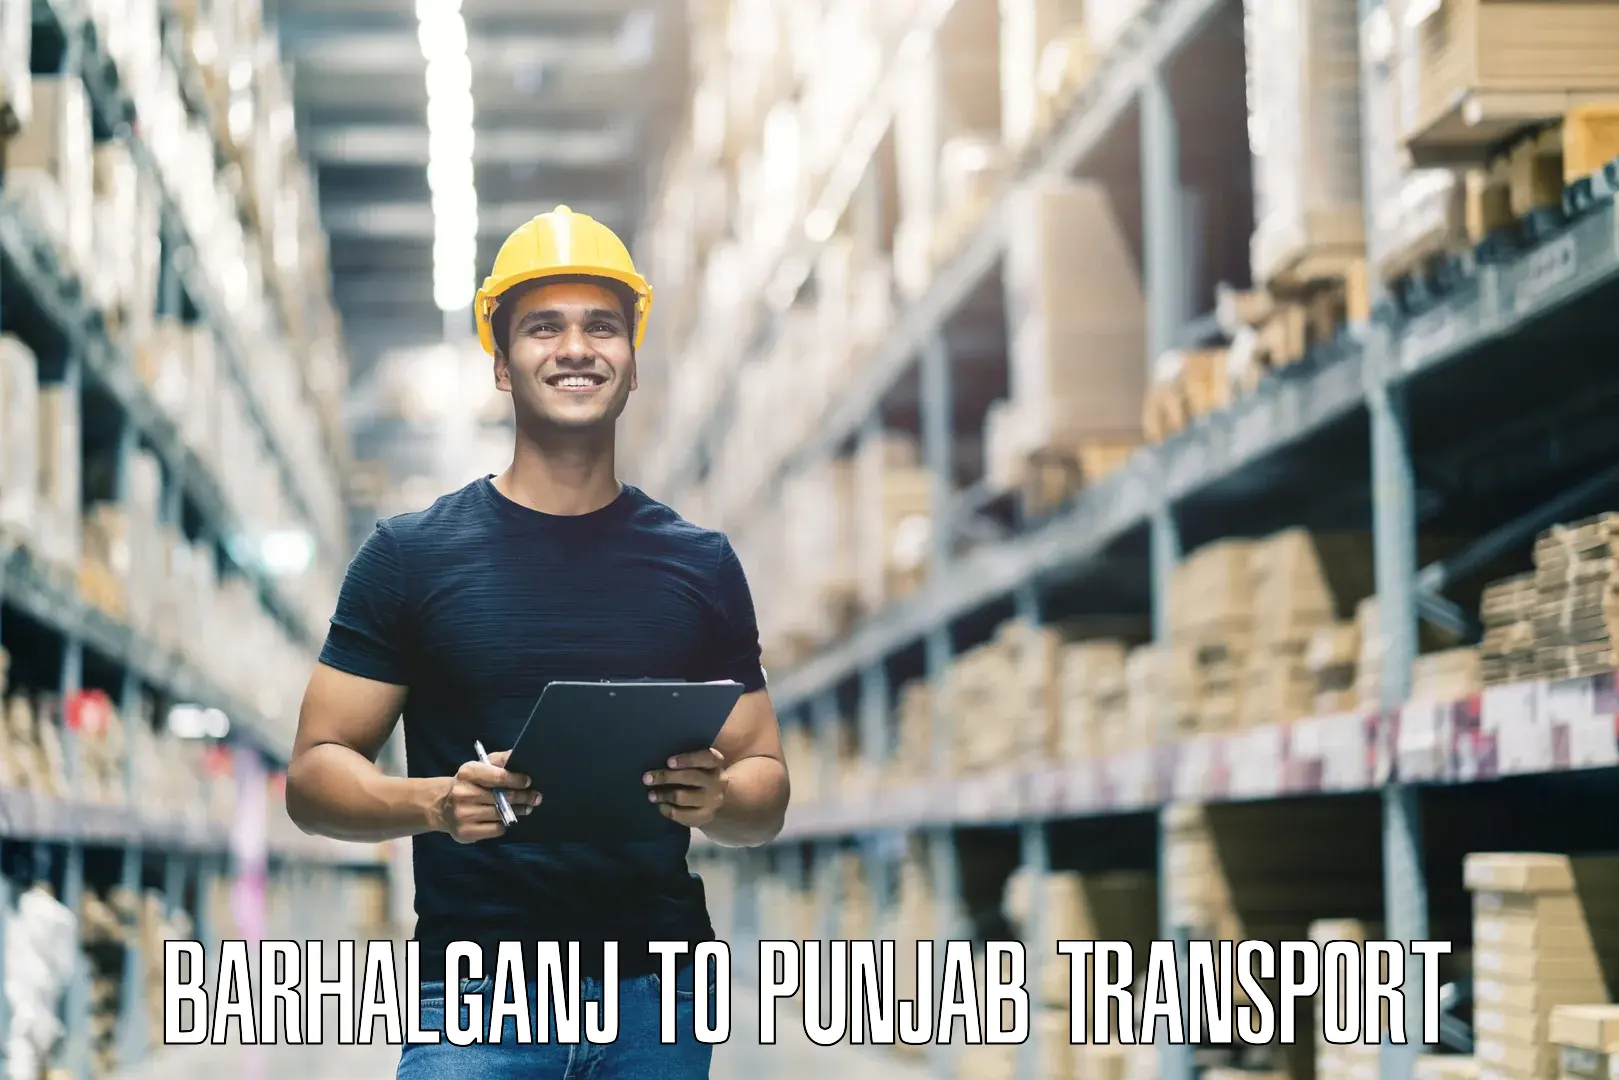 Sending bike to another city Barhalganj to Punjab